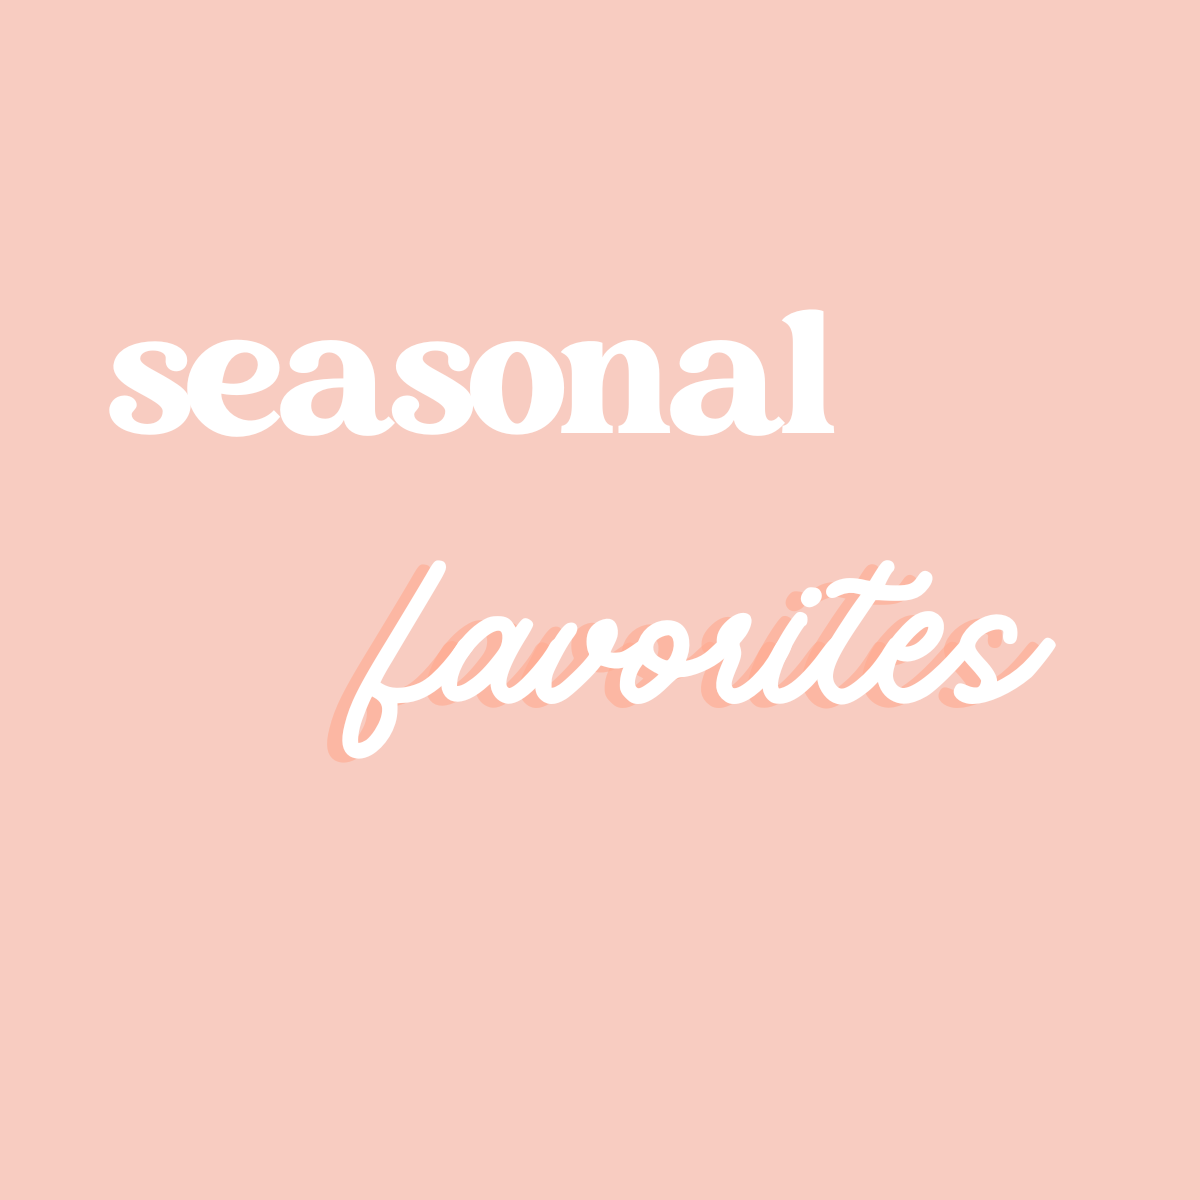 Seasonal Favorites